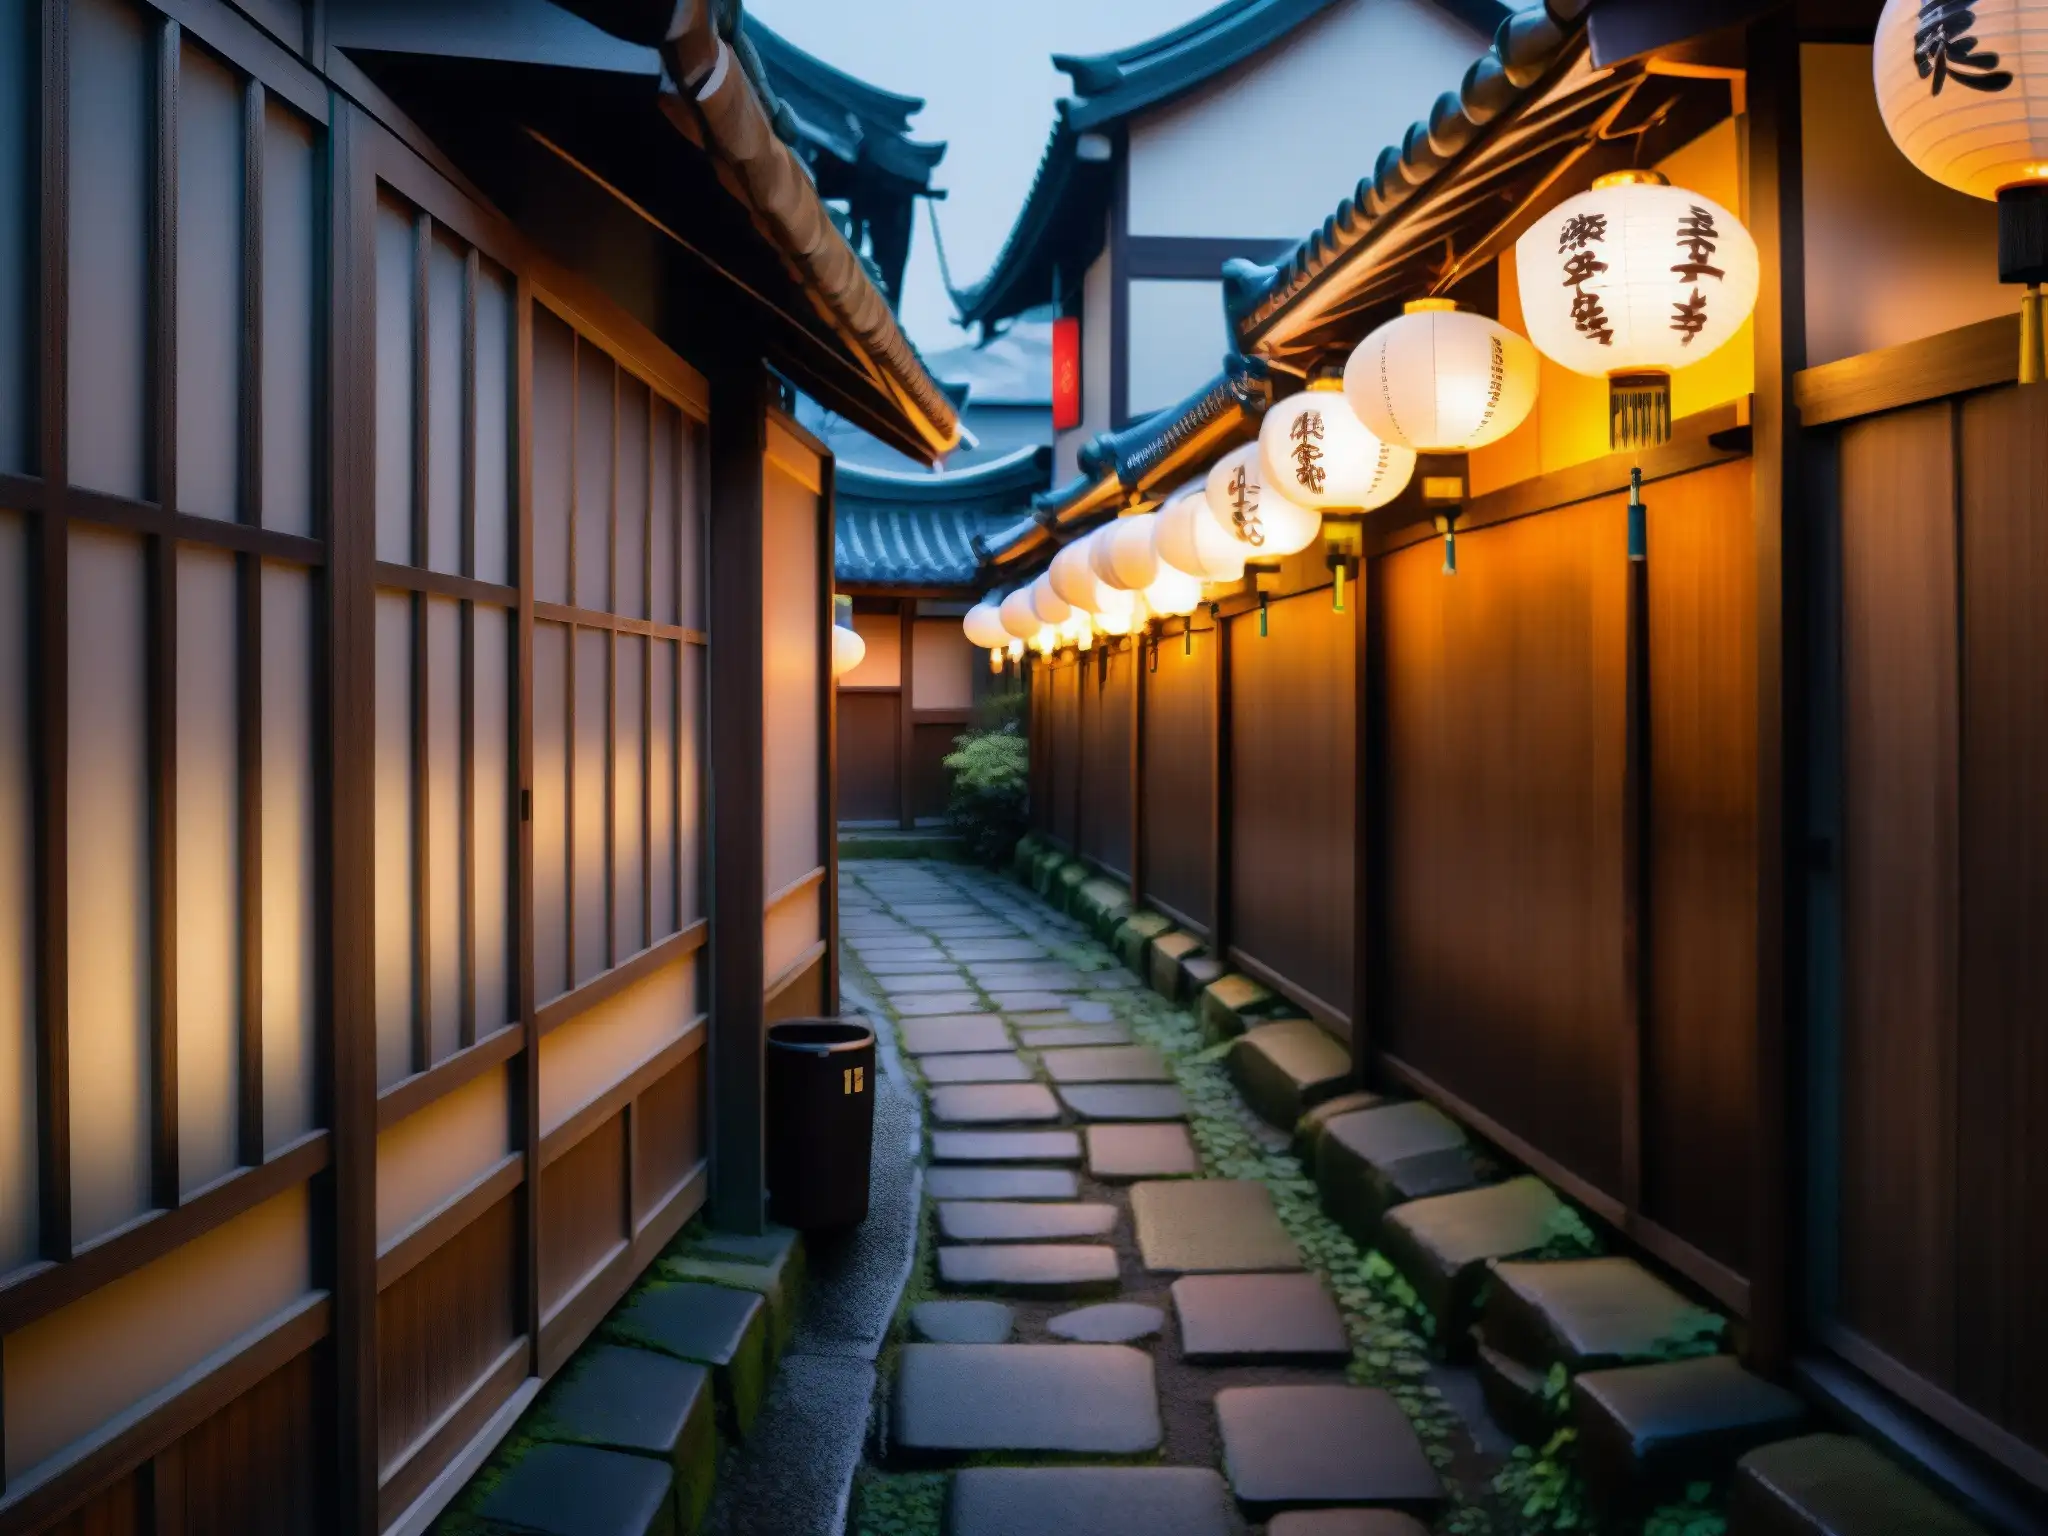 Alleyway misterioso en Tokio con faroles japoneses y aura de leyendas urbanas japonesas videojuegos